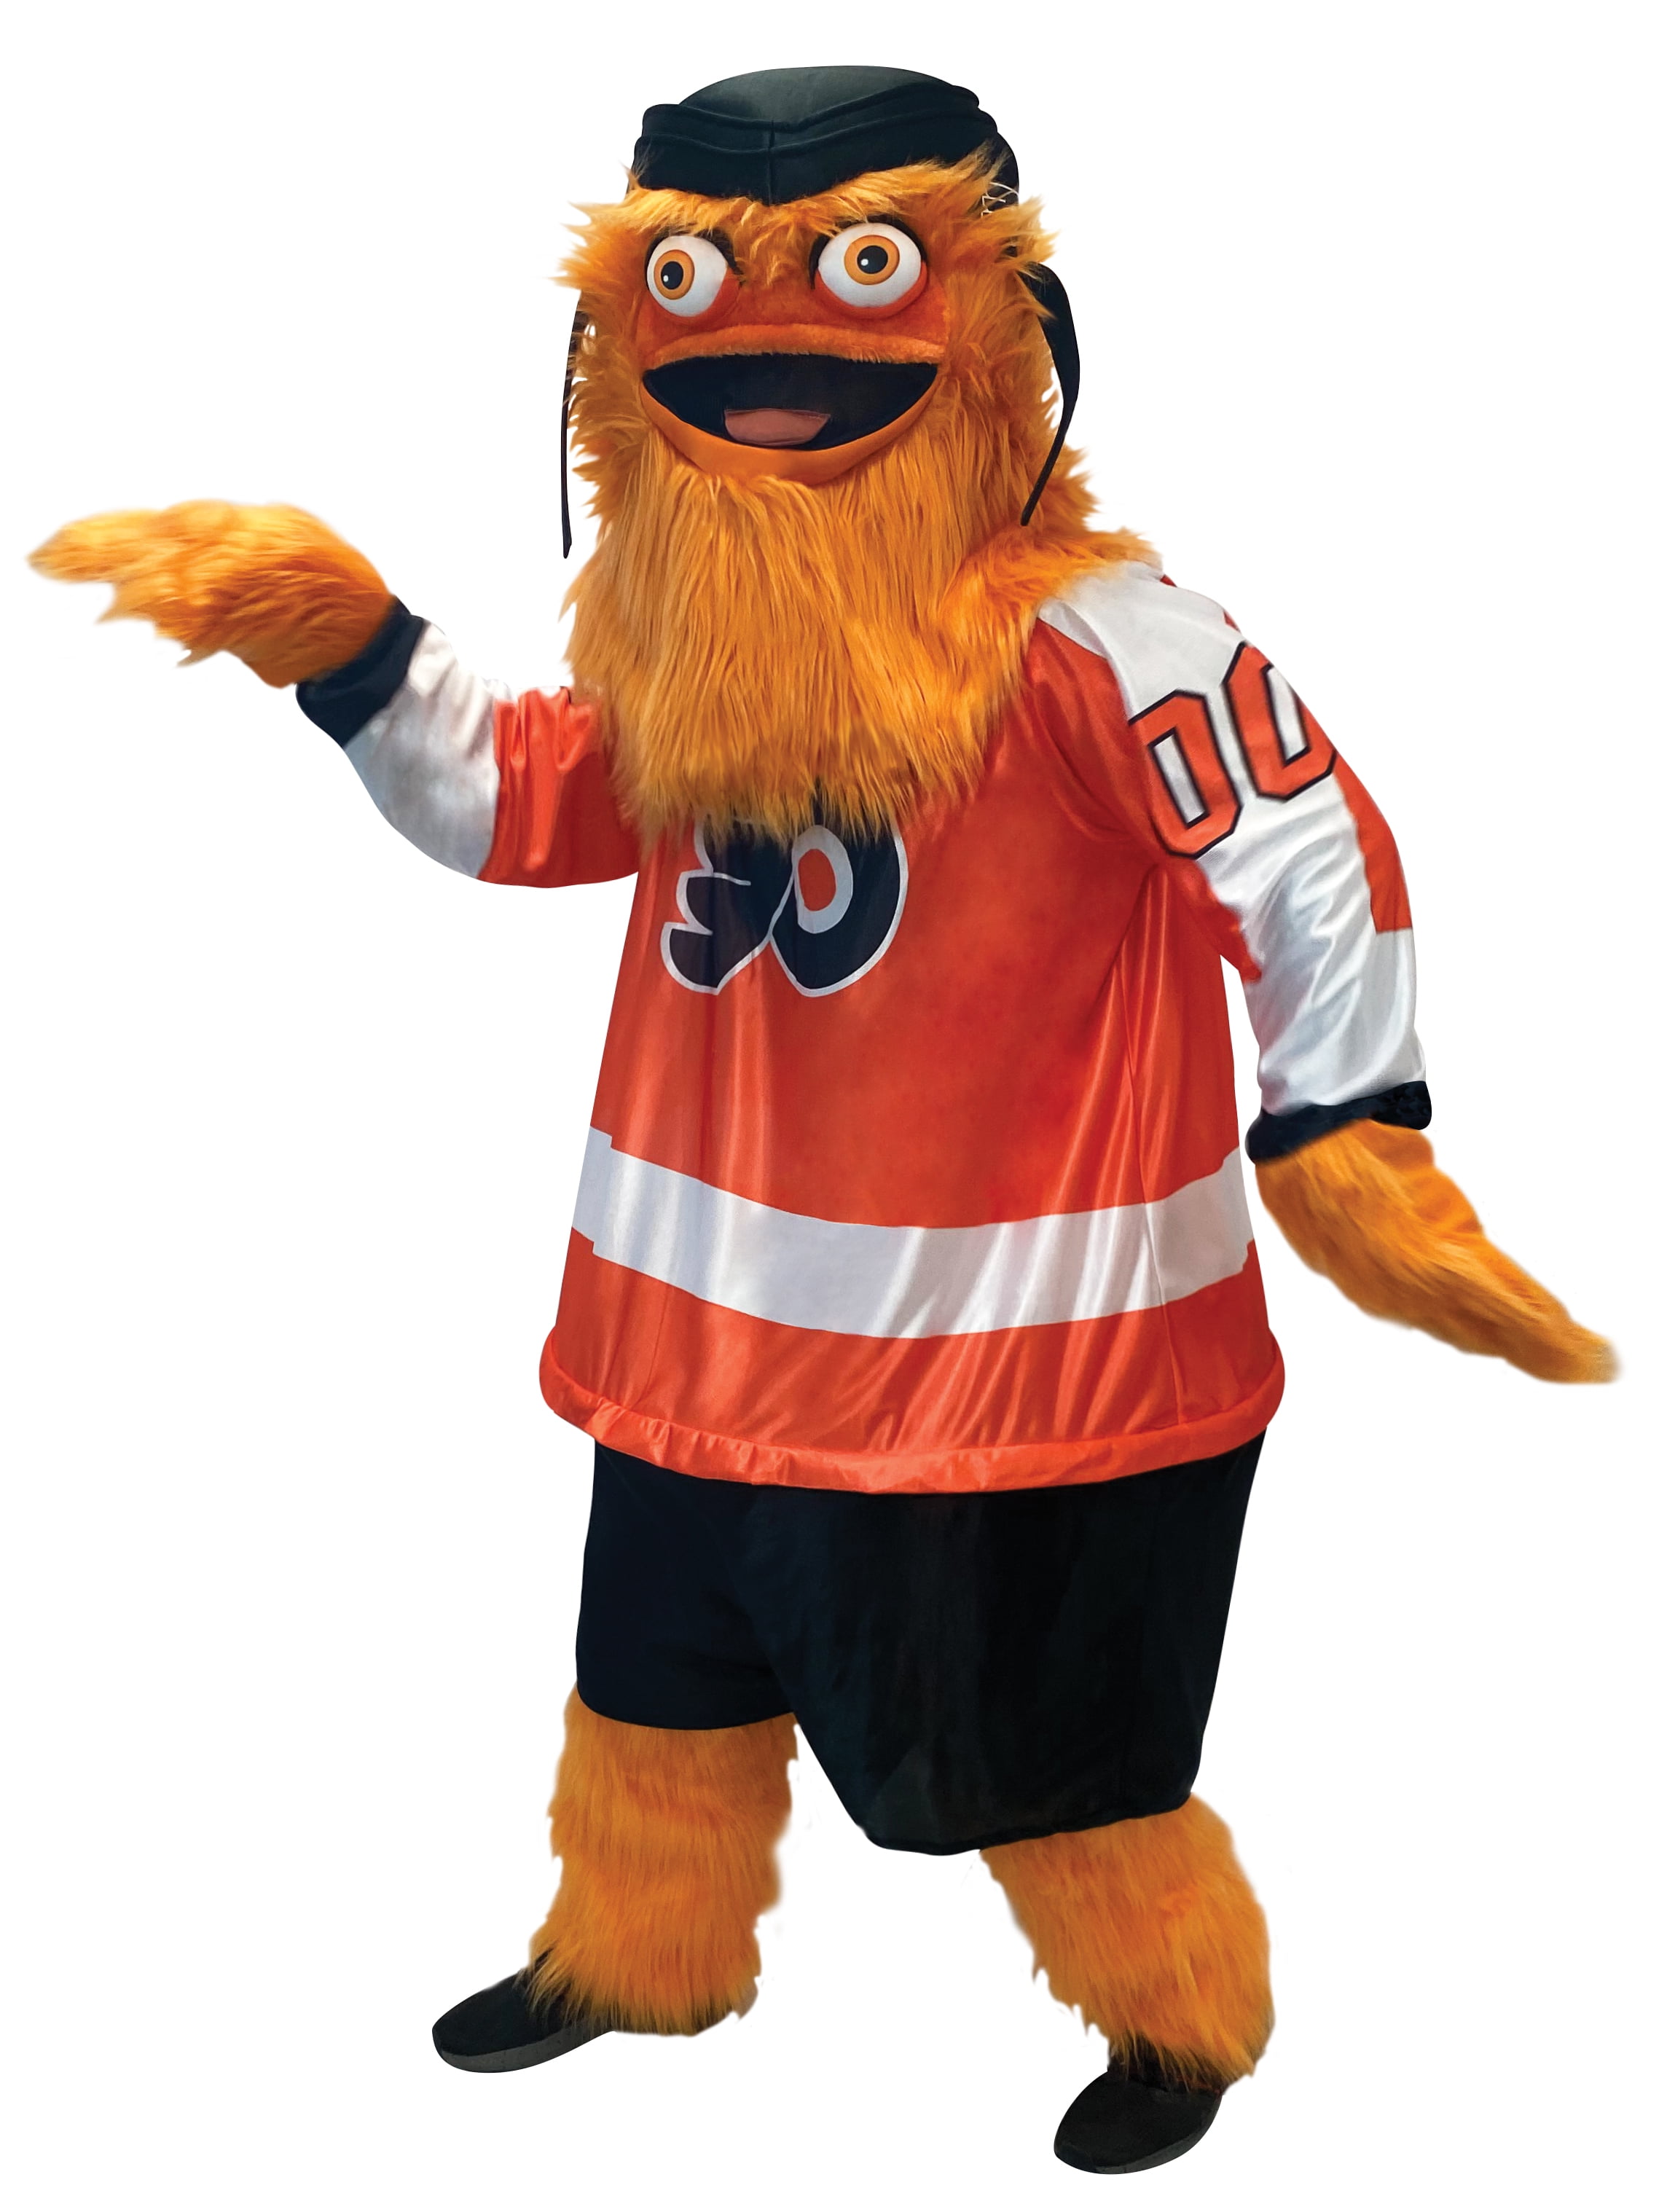  Rasta Imposta Family NHL's Philadelphia Flyers Gritty Mascot  Head-wear 4 Piece Fan Pack, One Size Orange : Sports & Outdoors